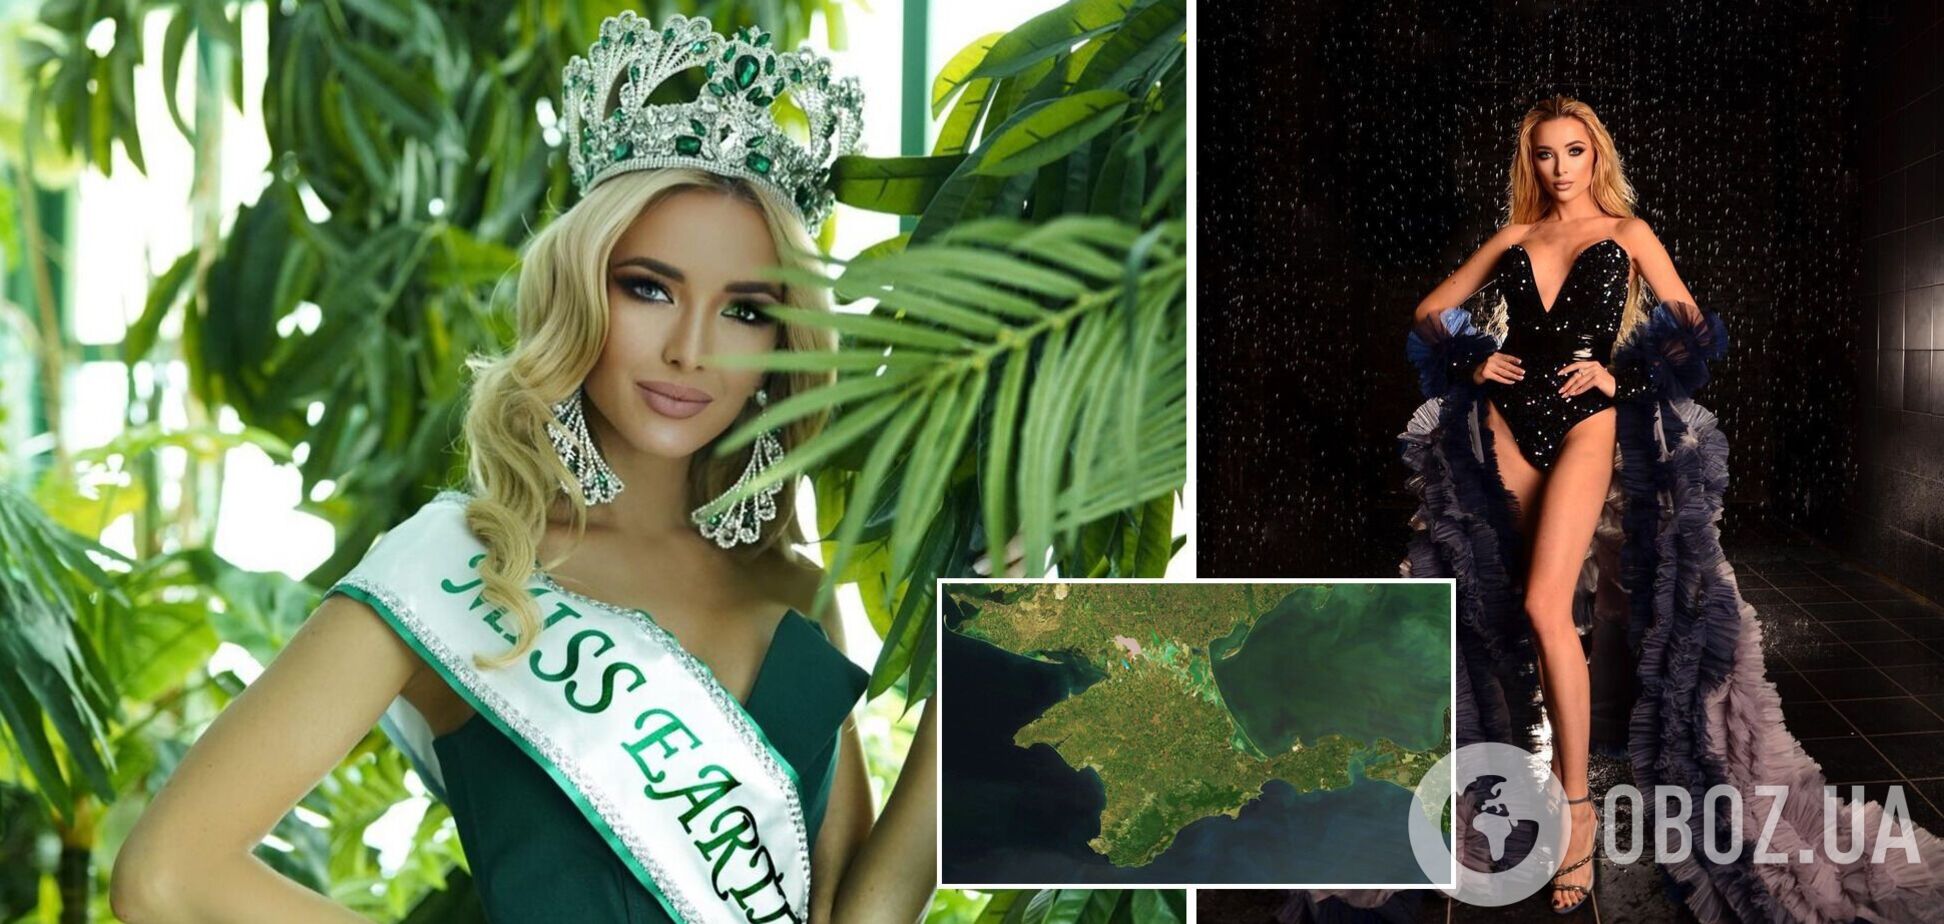 Модель из Крыма пожаловалась на организаторов 'Мисс Земля'